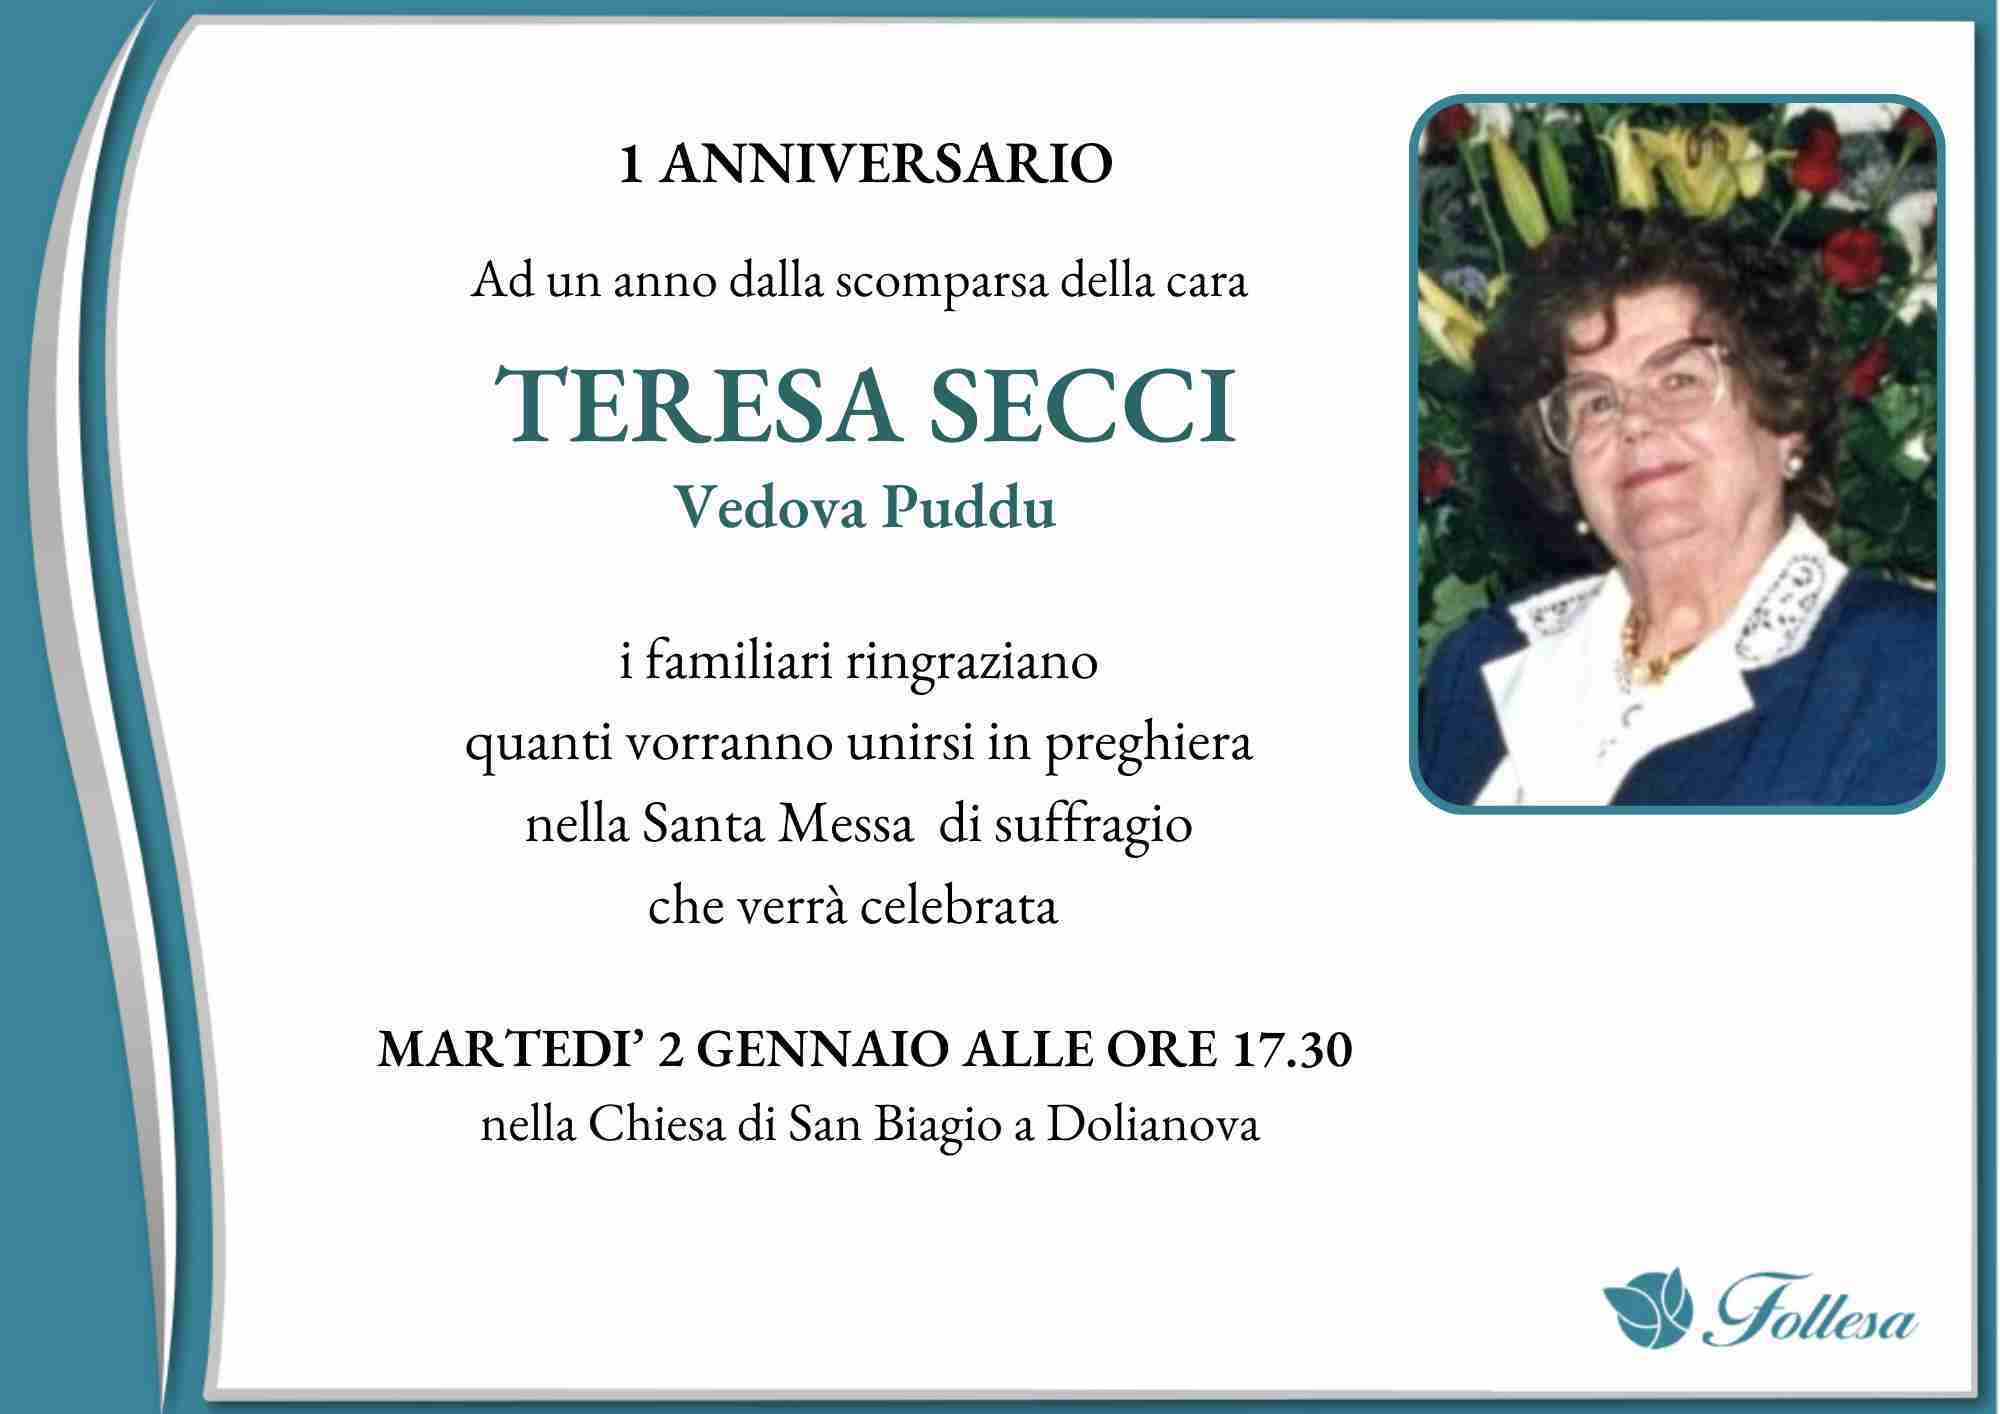 Teresa Secci